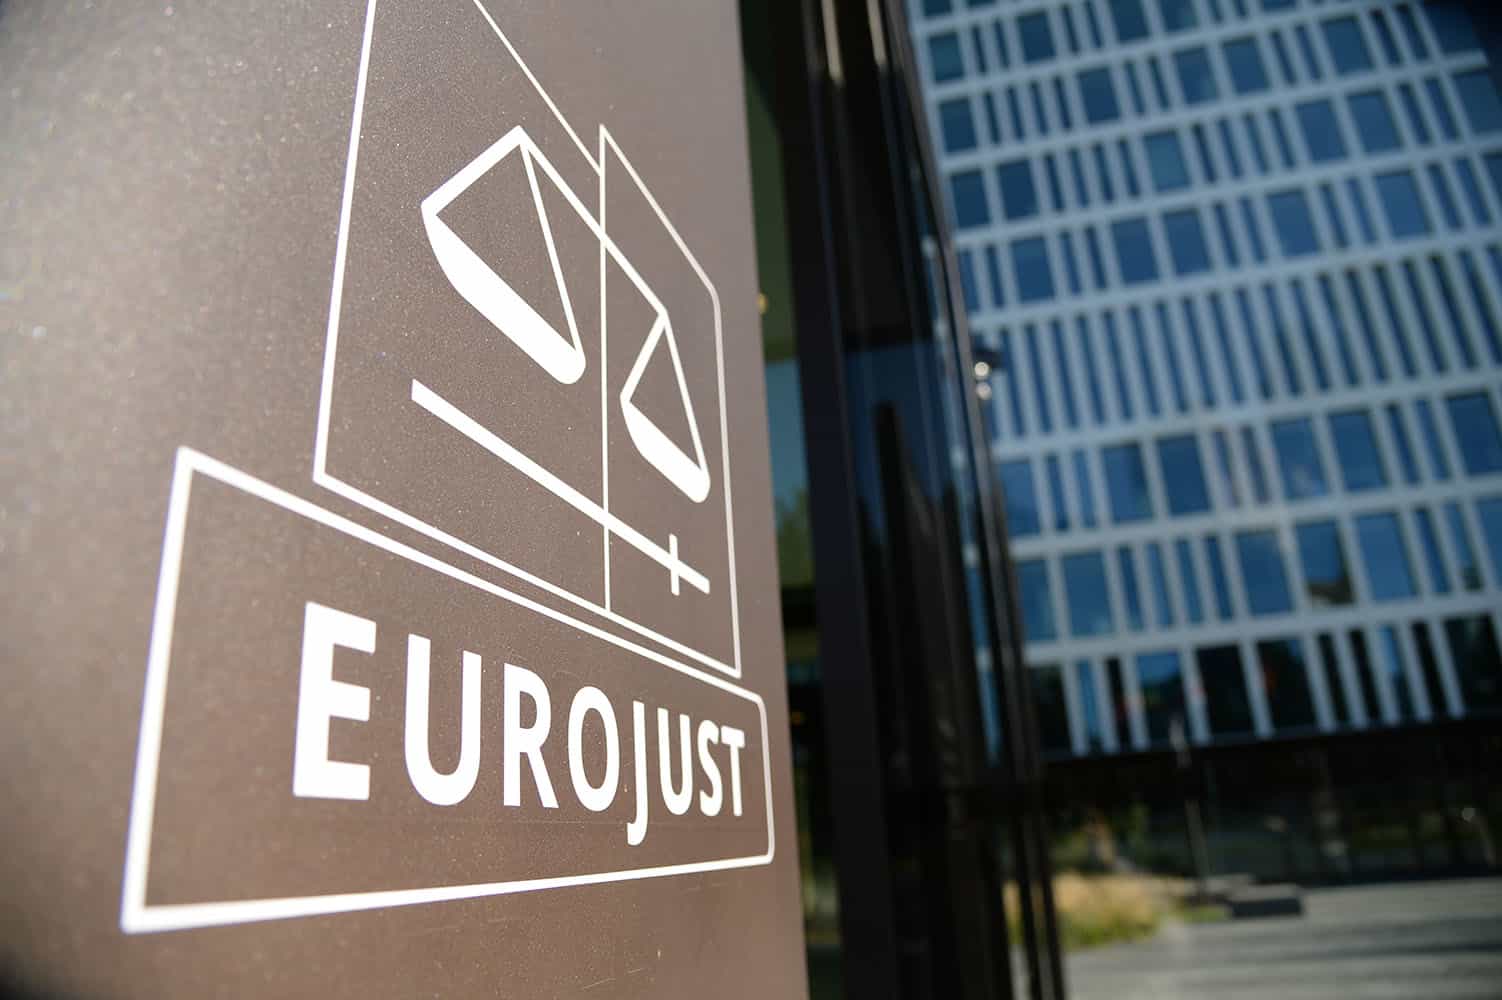 Přečtete si více ze článku Aktuální pracovní nabídky v EU: Eurojust, EBA, EUAA